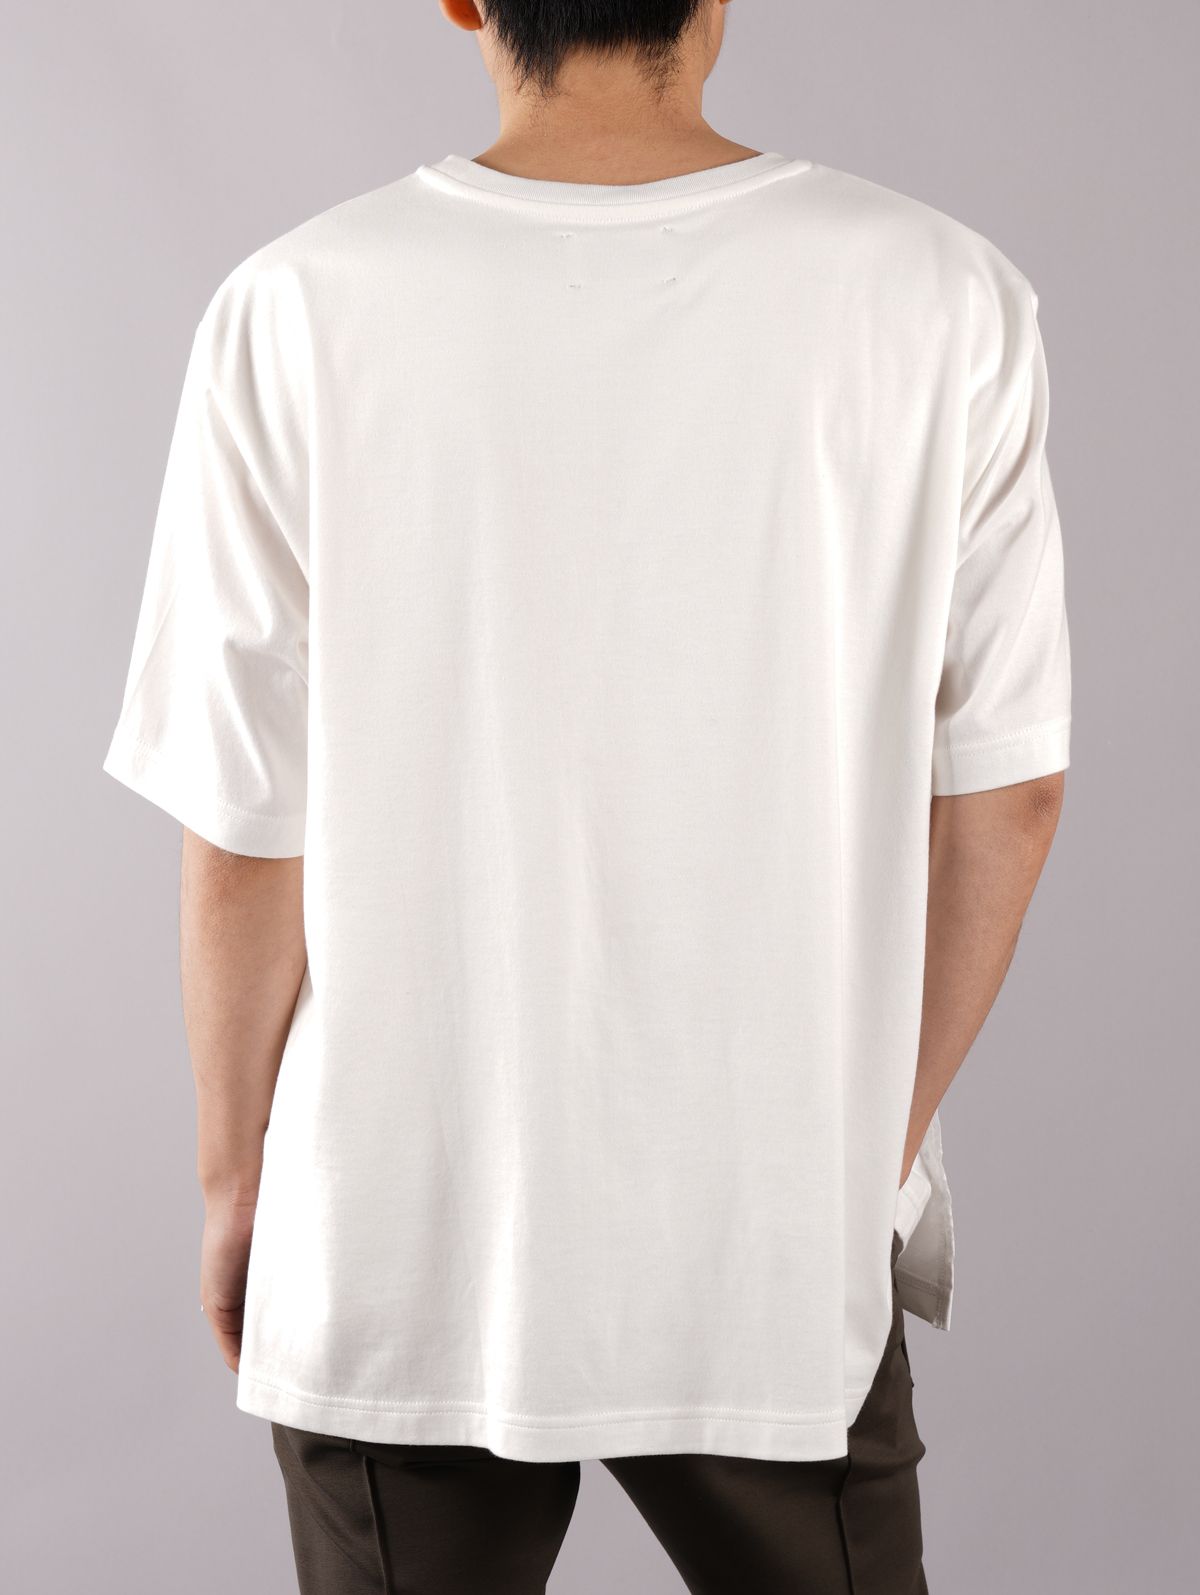 TAAKK - 【ラスト1点】LAYERED T-SHIRTS / レイヤード Tシャツ (半袖) / ホワイト / オパール加工 |  Confidence